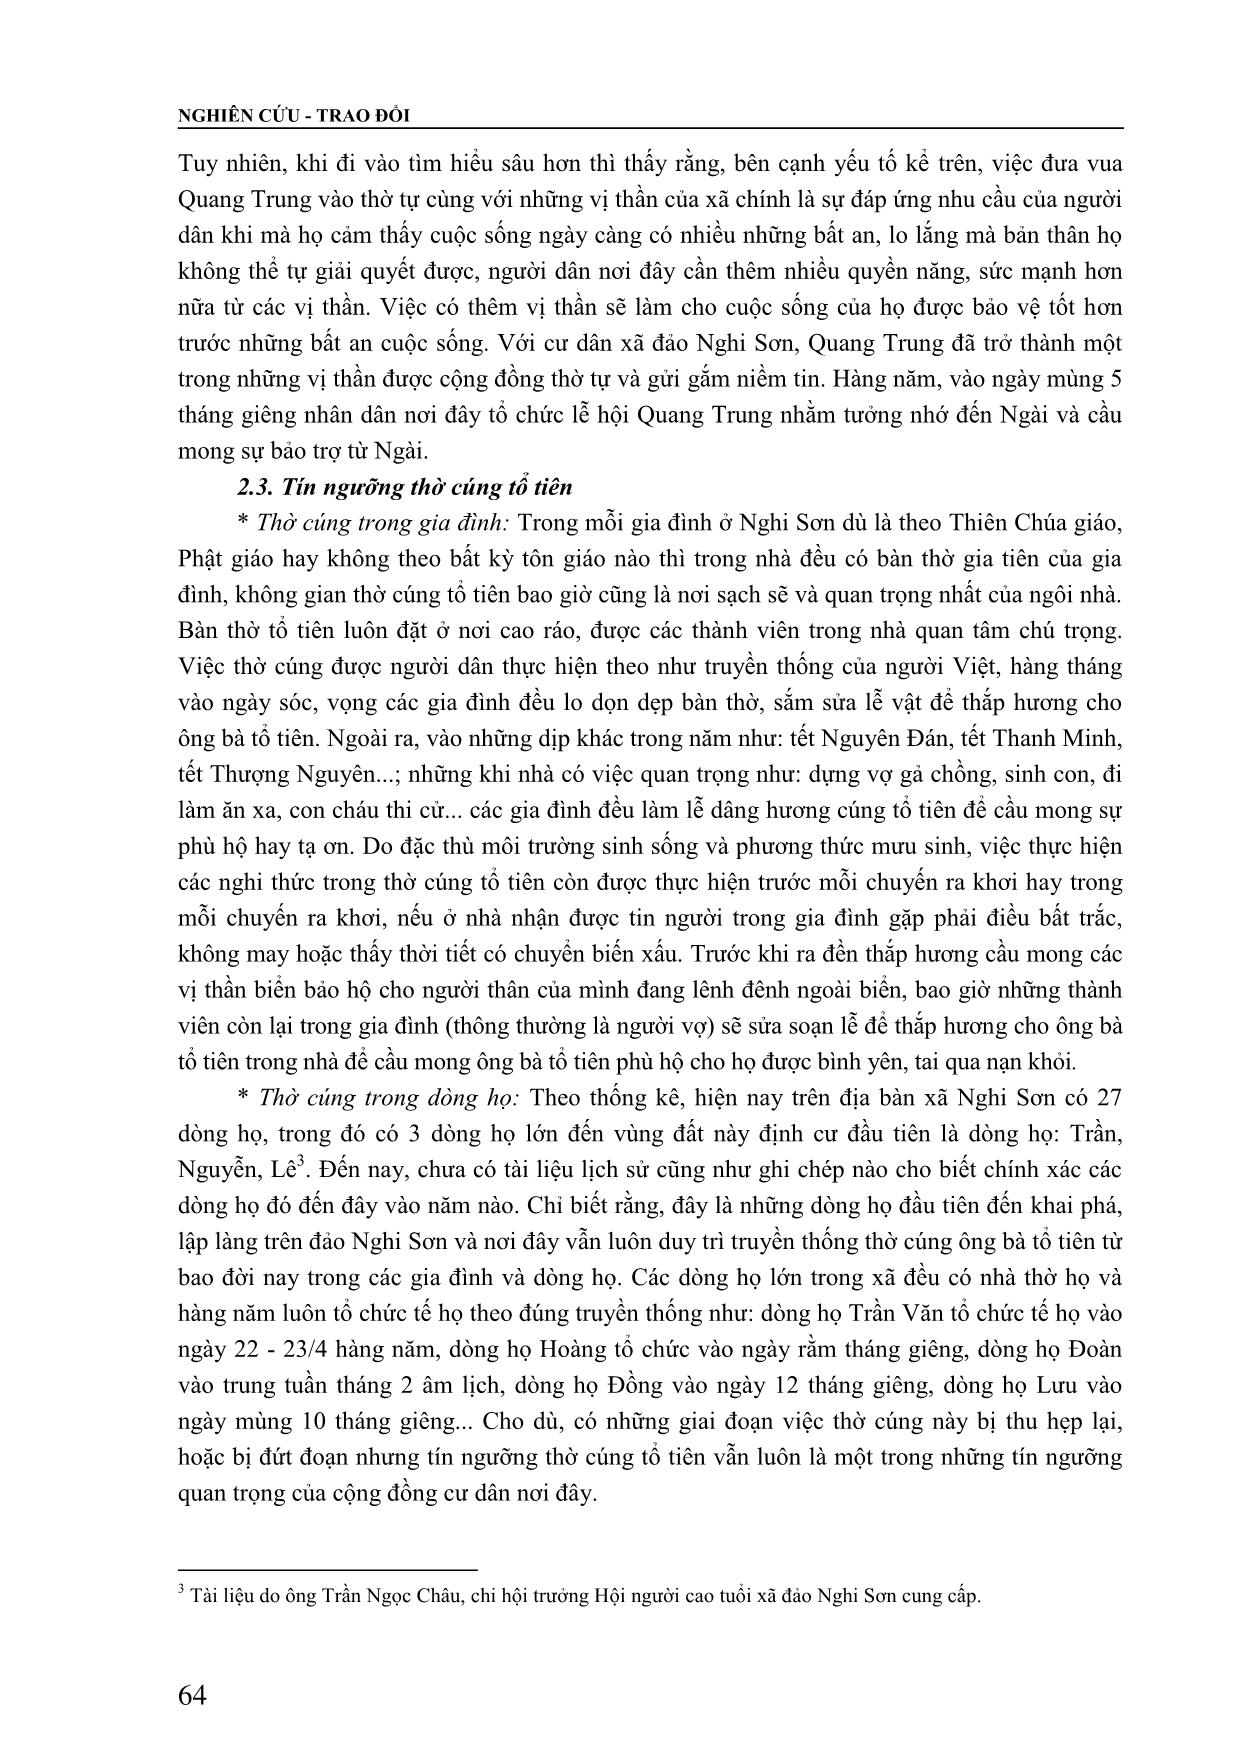 Vai trò của tín ngưỡng trong đời sống tinh thần của cộng đồng cư dân xã đảo Nghi Sơn, huyện Tĩnh Gia, tỉnh Thanh Hóa trang 5